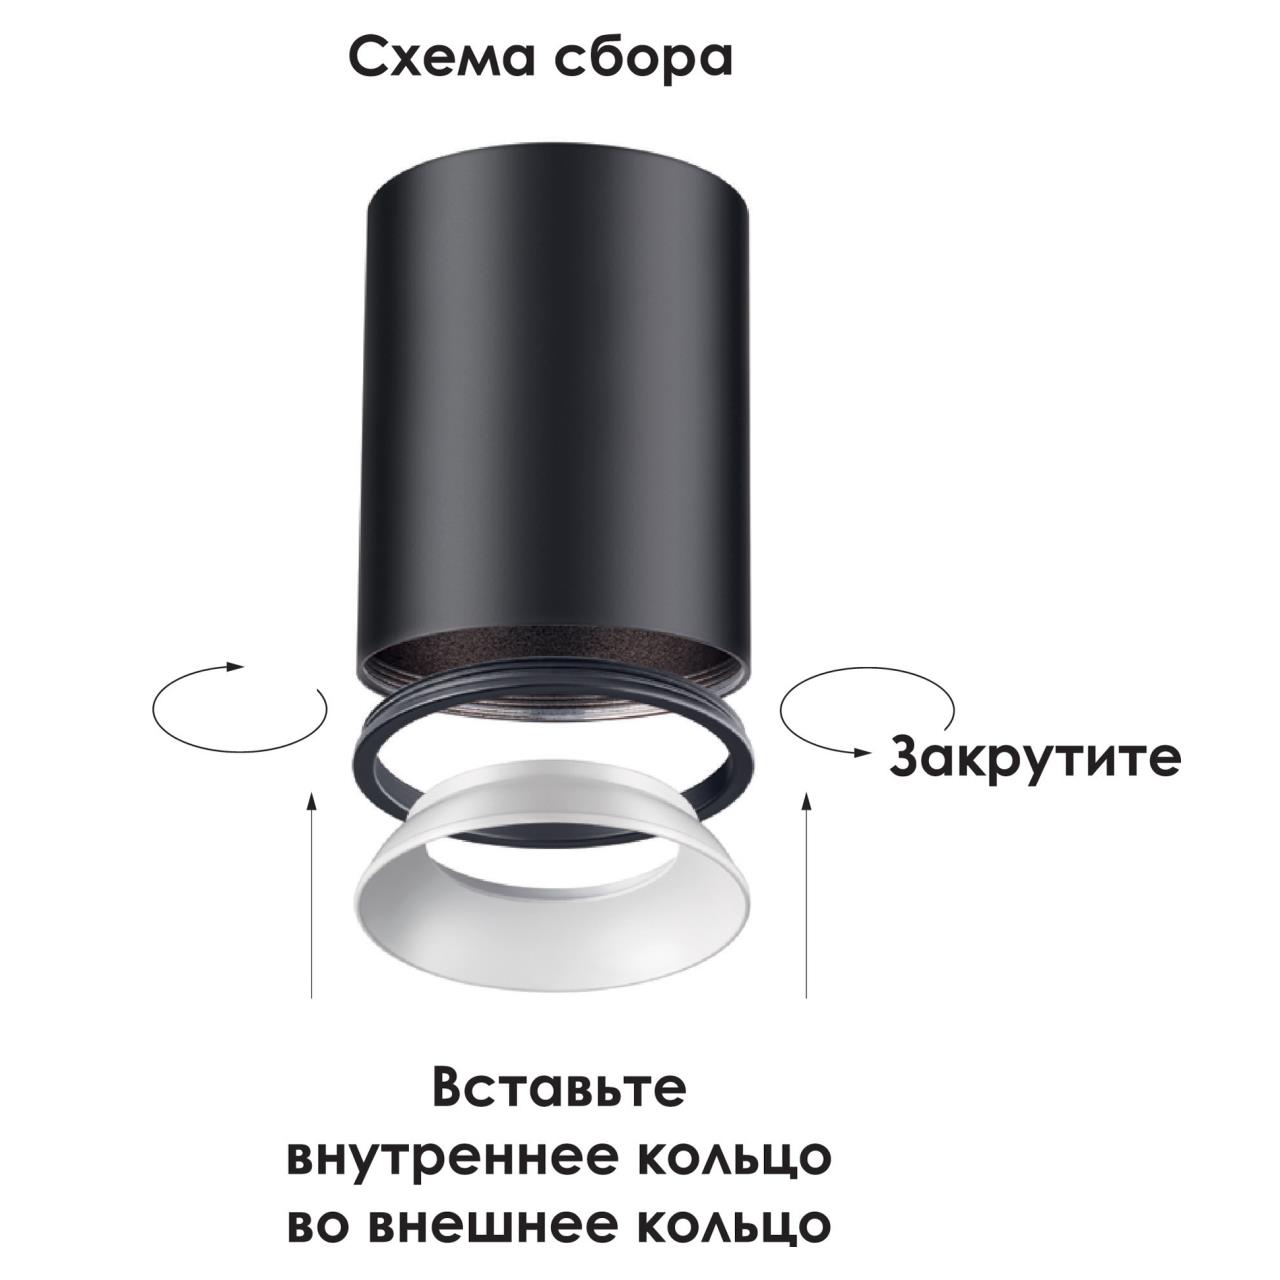 Внешнее декоративное кольцо к артикулам 370529 - 370534 Novotech Unite 370543 в Москве